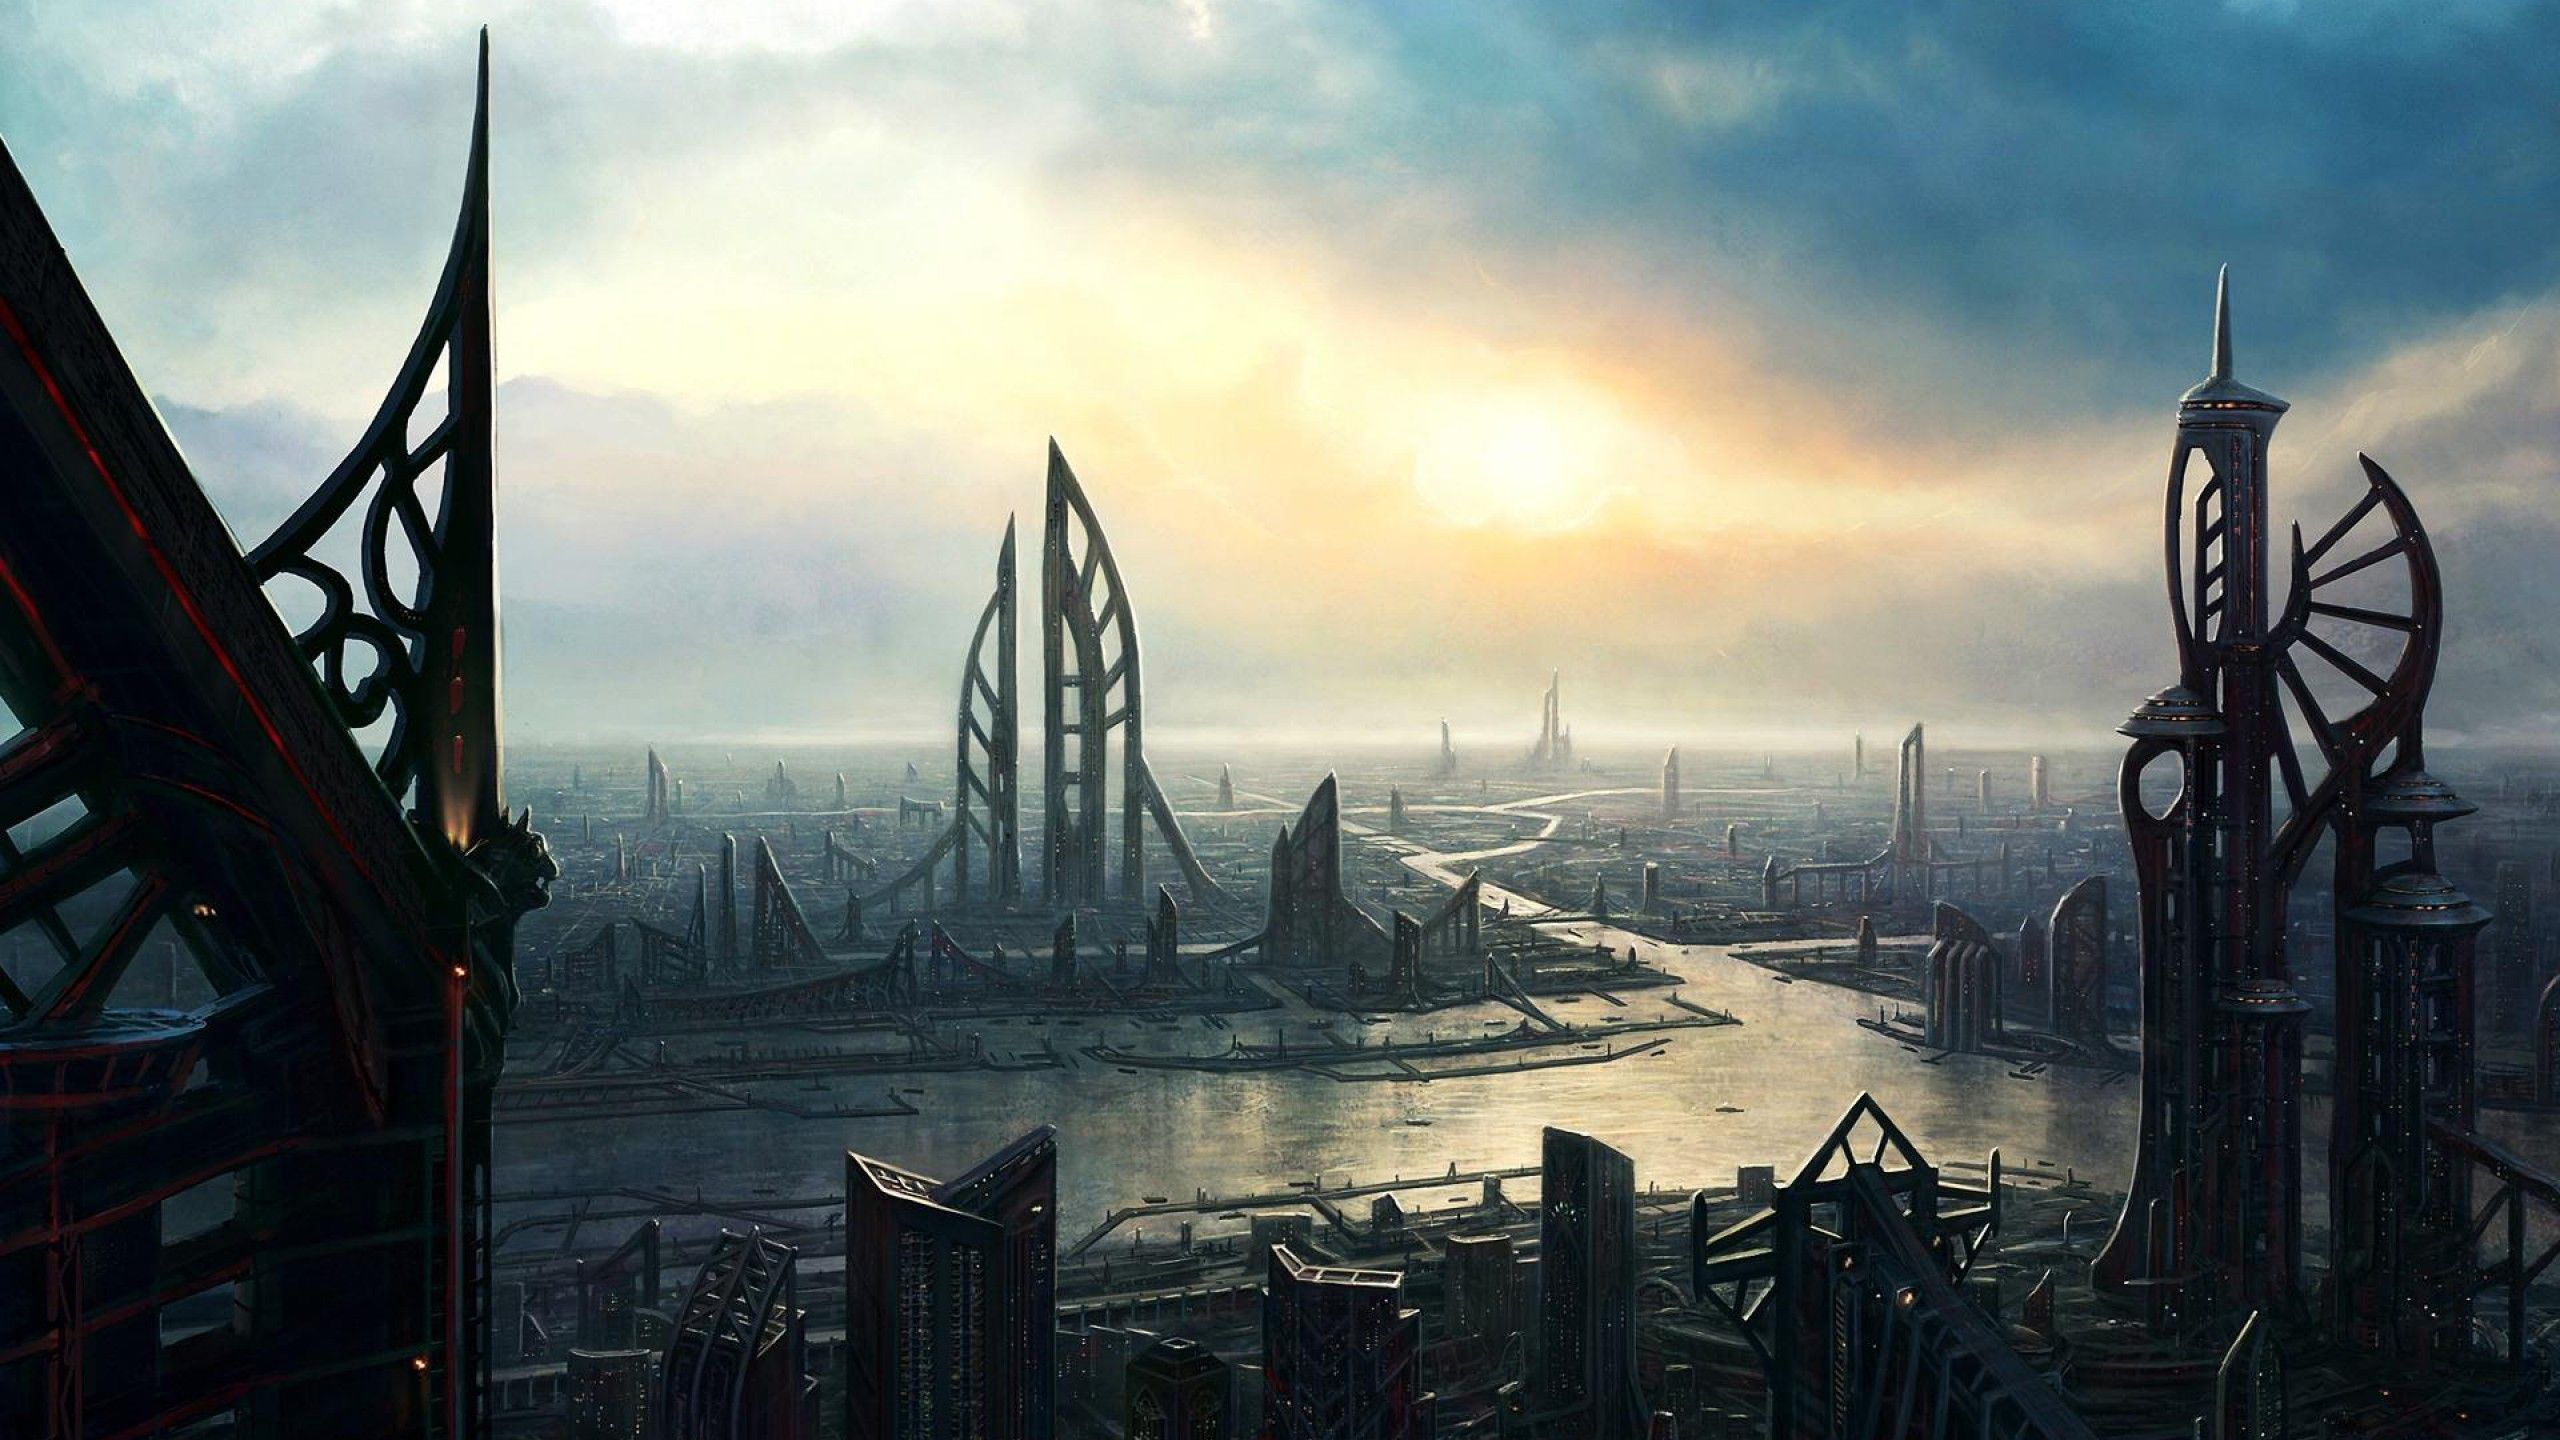 2560x1440 Dystopia | Sci fi wallpaper, Futuristic city, Sci fi landscape